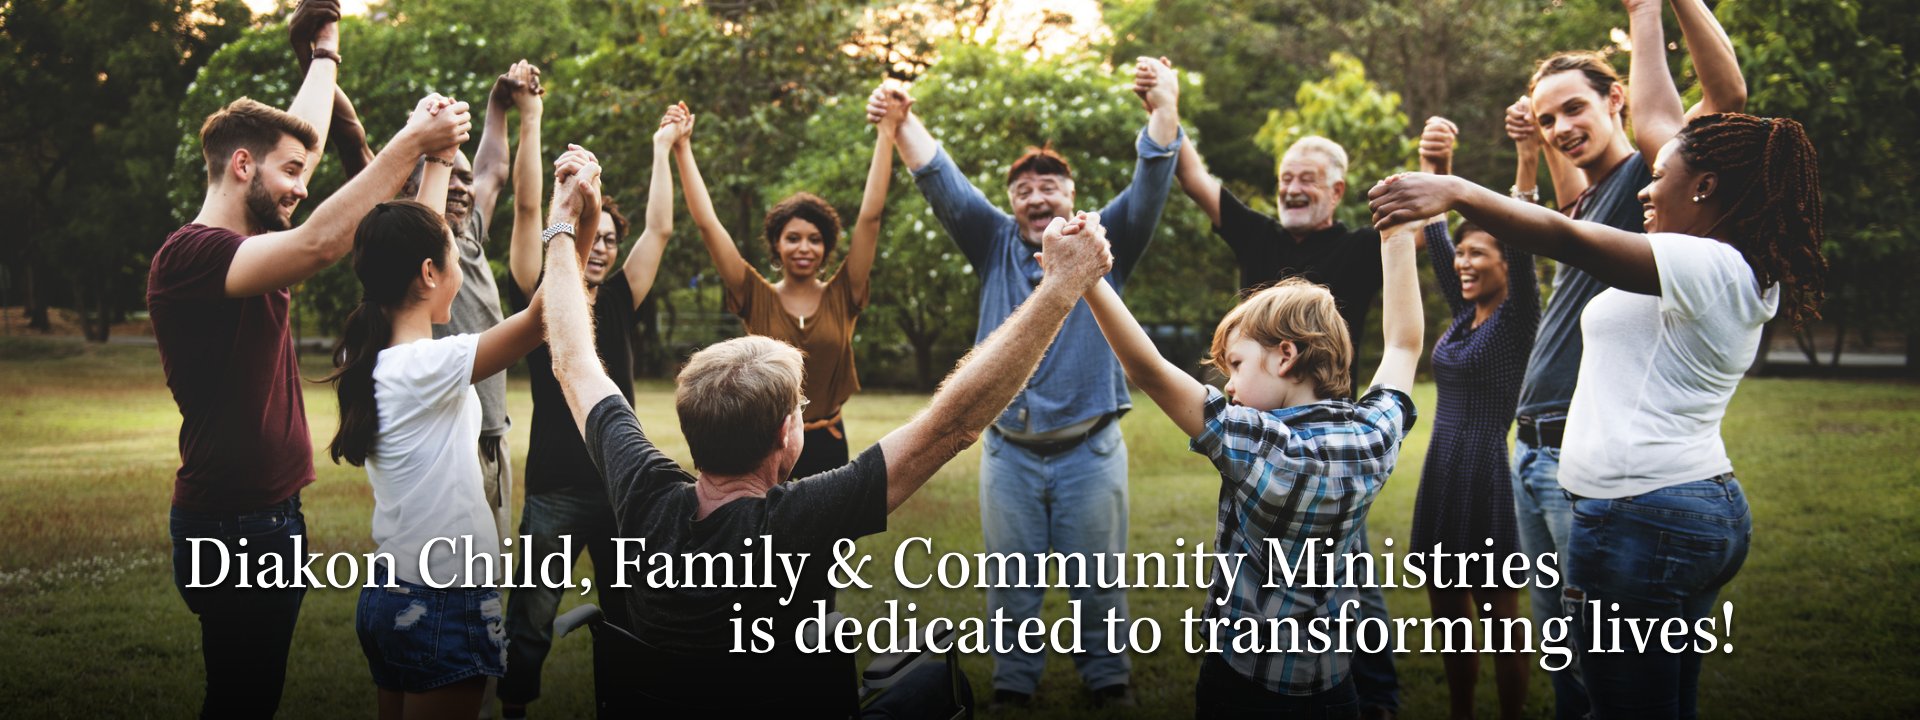 Diakon Child, Family & Community Ministries